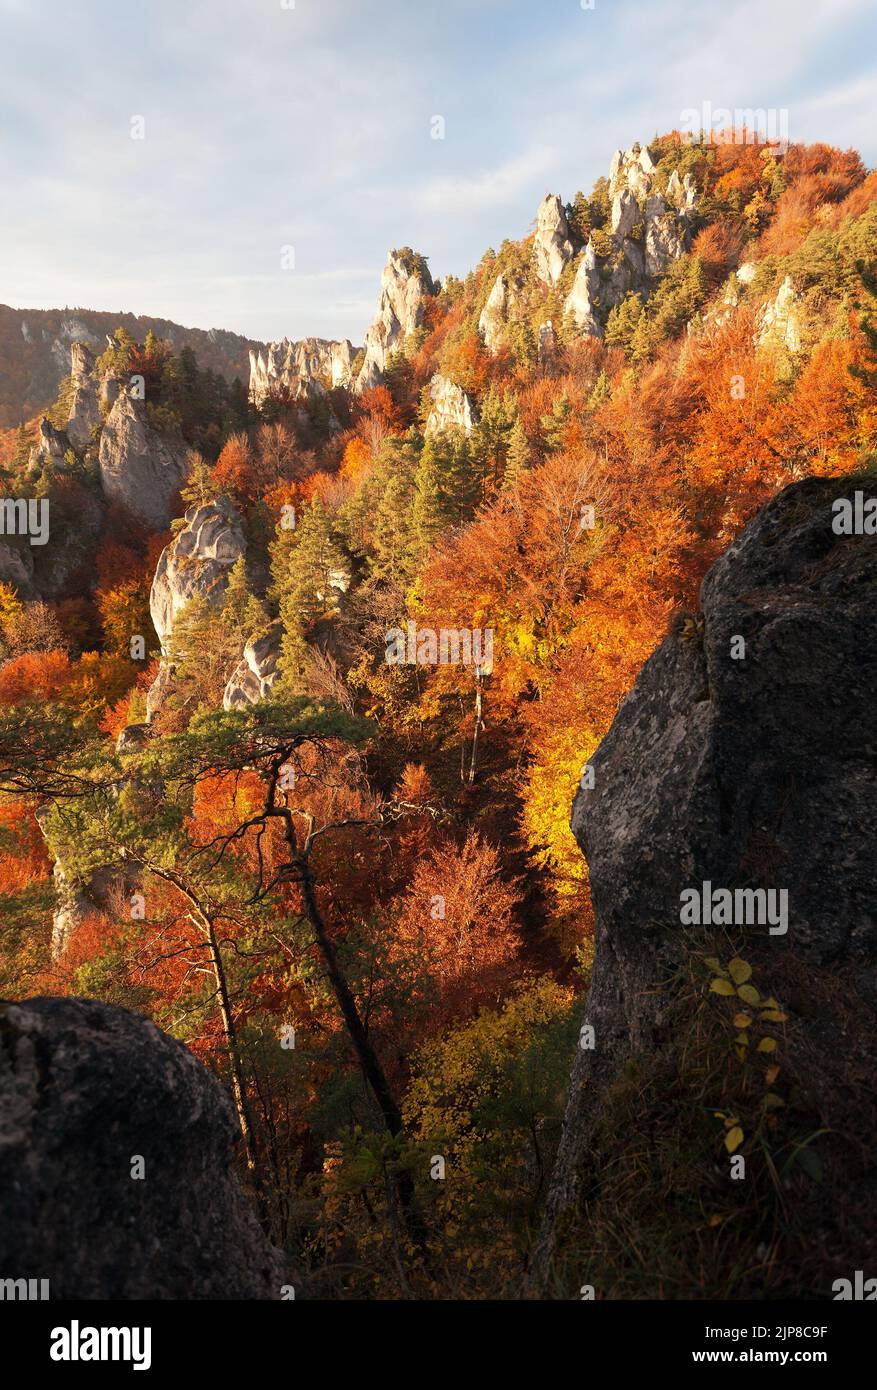 Le soir, vue de couleur rouge à l'automne depuis les rocheuses de Sulov - sulovske Skaly - Slovaquie Banque D'Images